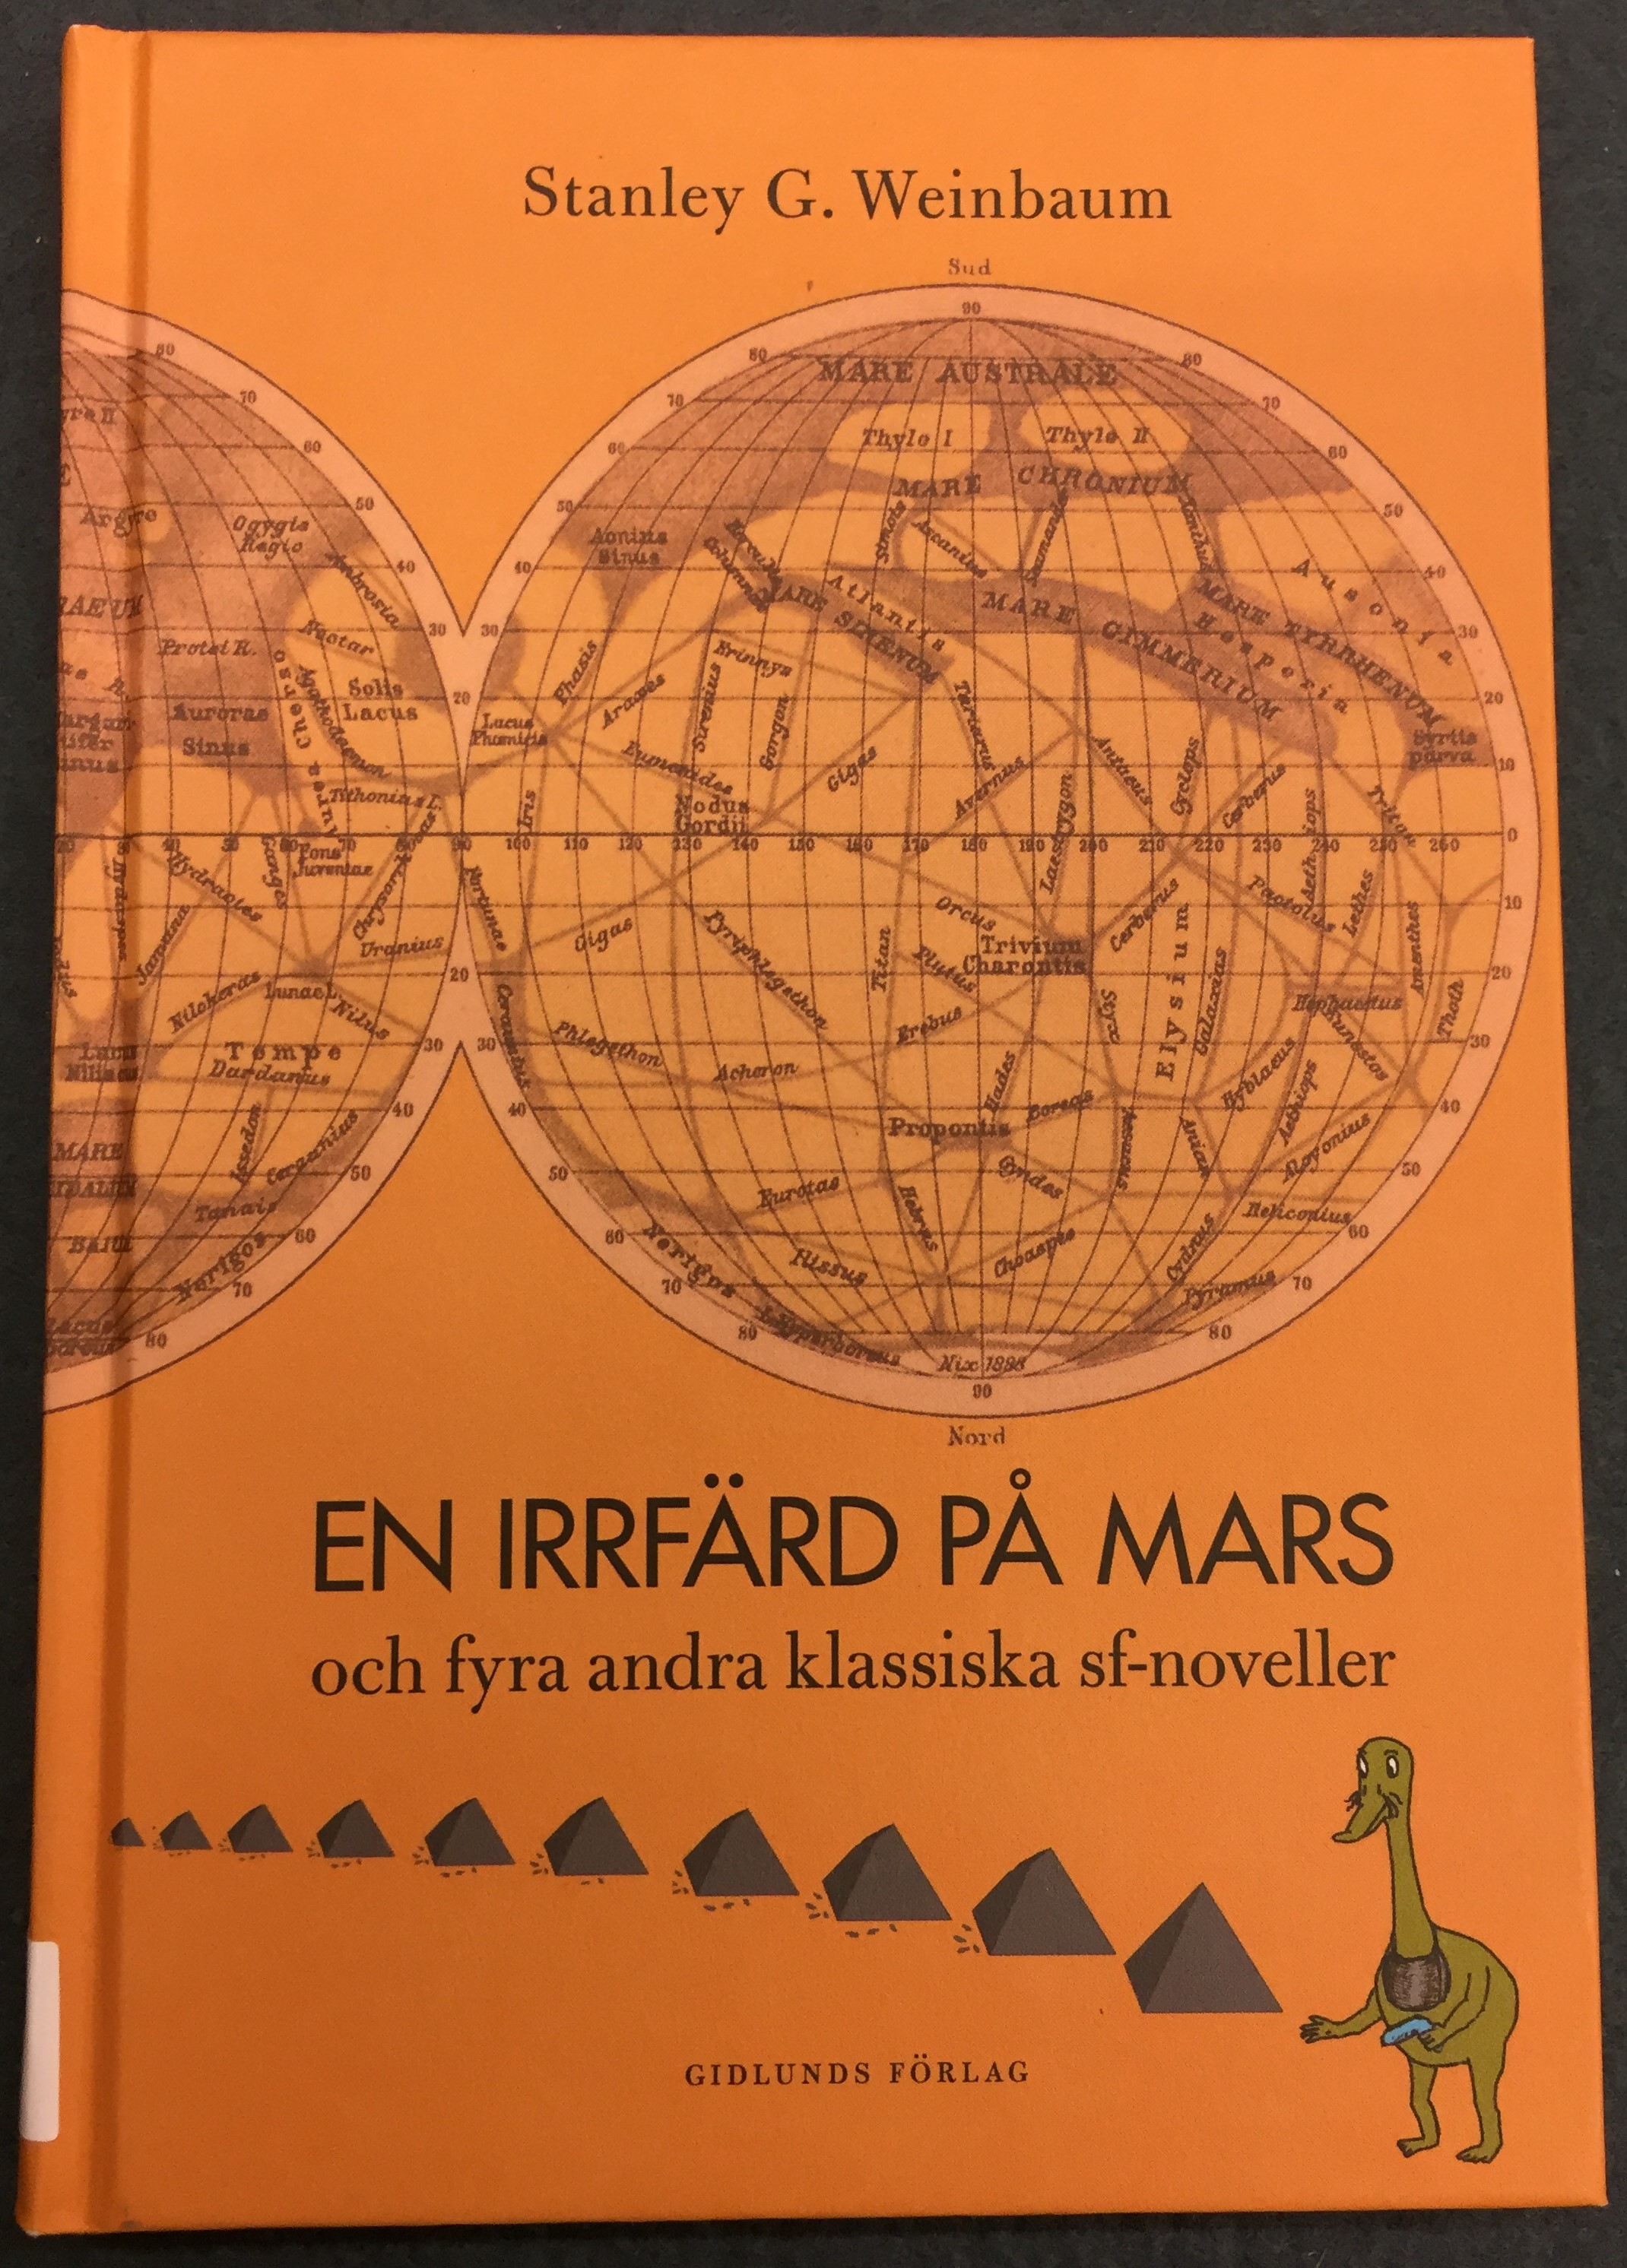 Omslag till En irrfärd på mars. Pyramider och en grön varelse under en karta över Mars mot en orange bakgrund.